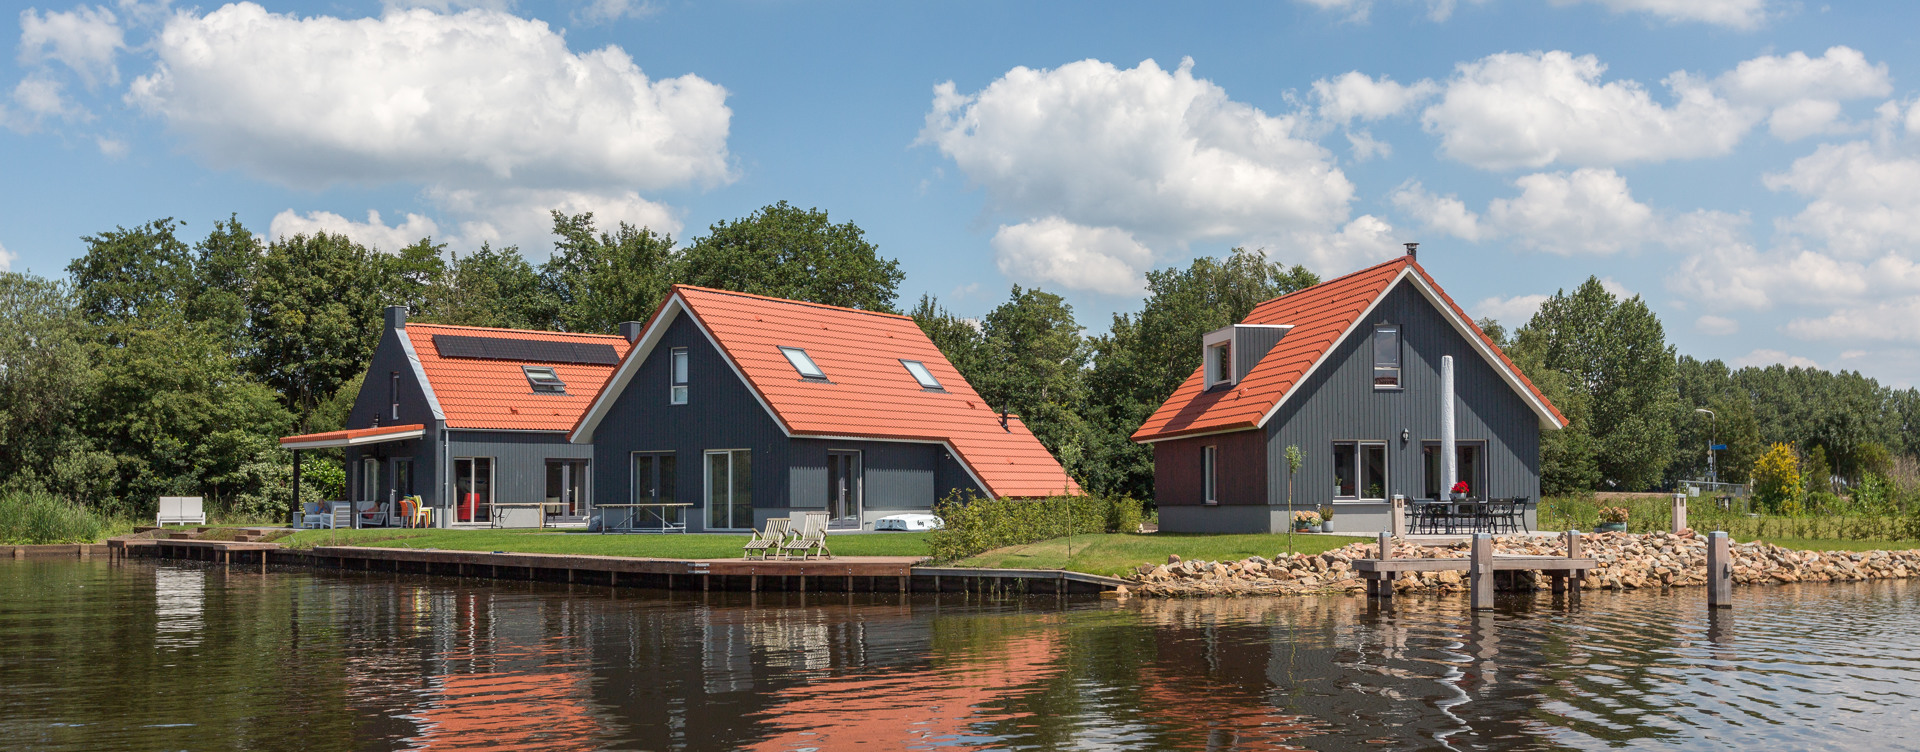 Genießen Sie einen herrlichen Urlaub am Wasser in Friesland